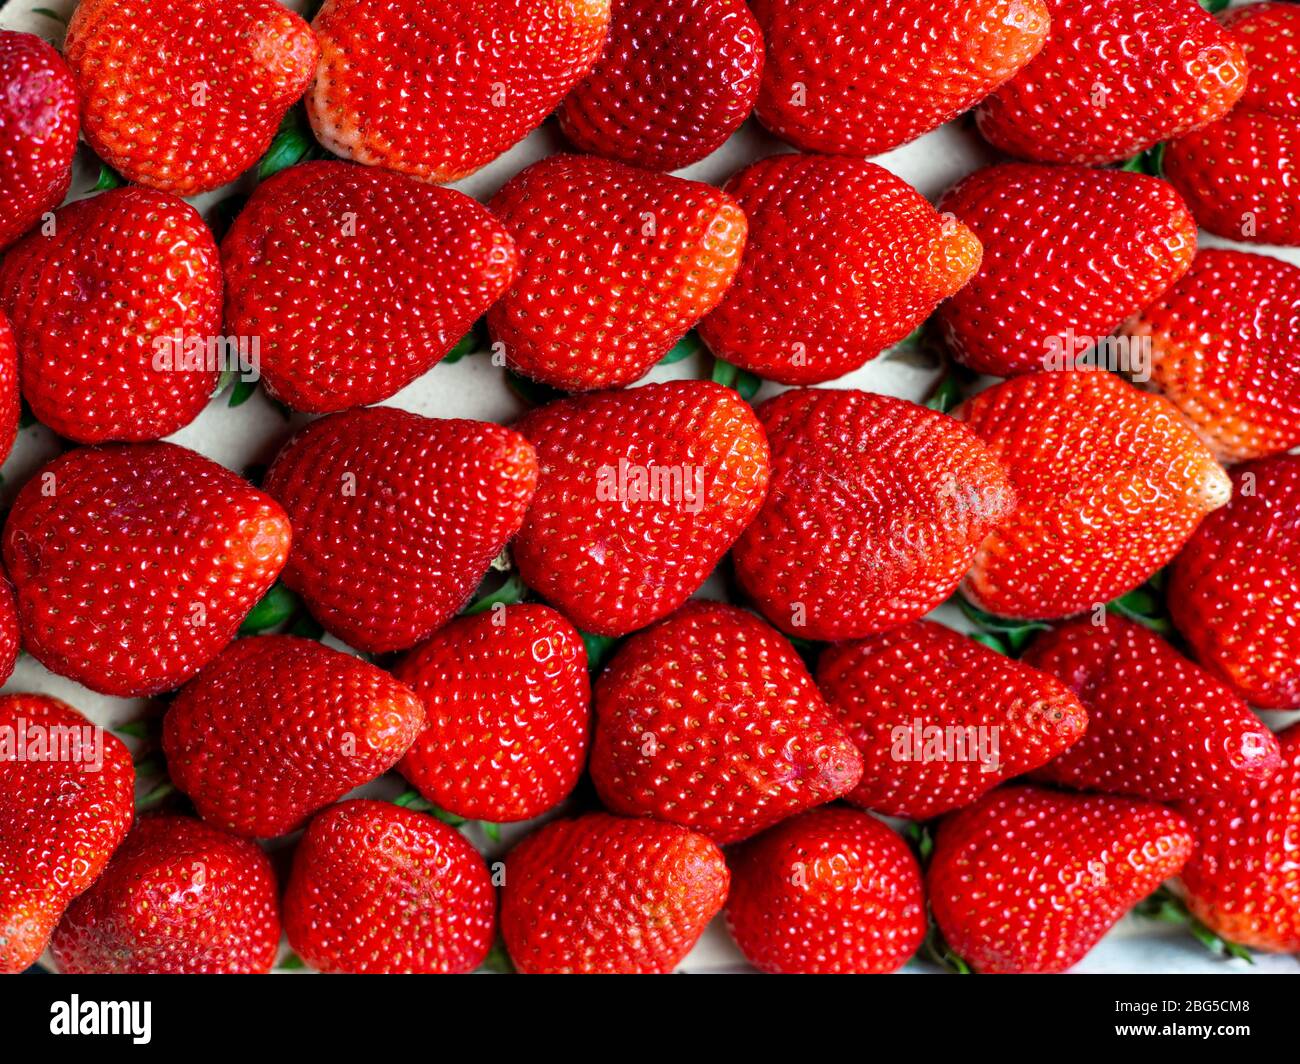 Les fraises du marché hebdomadaire près de ma ville, elles semblent super Banque D'Images